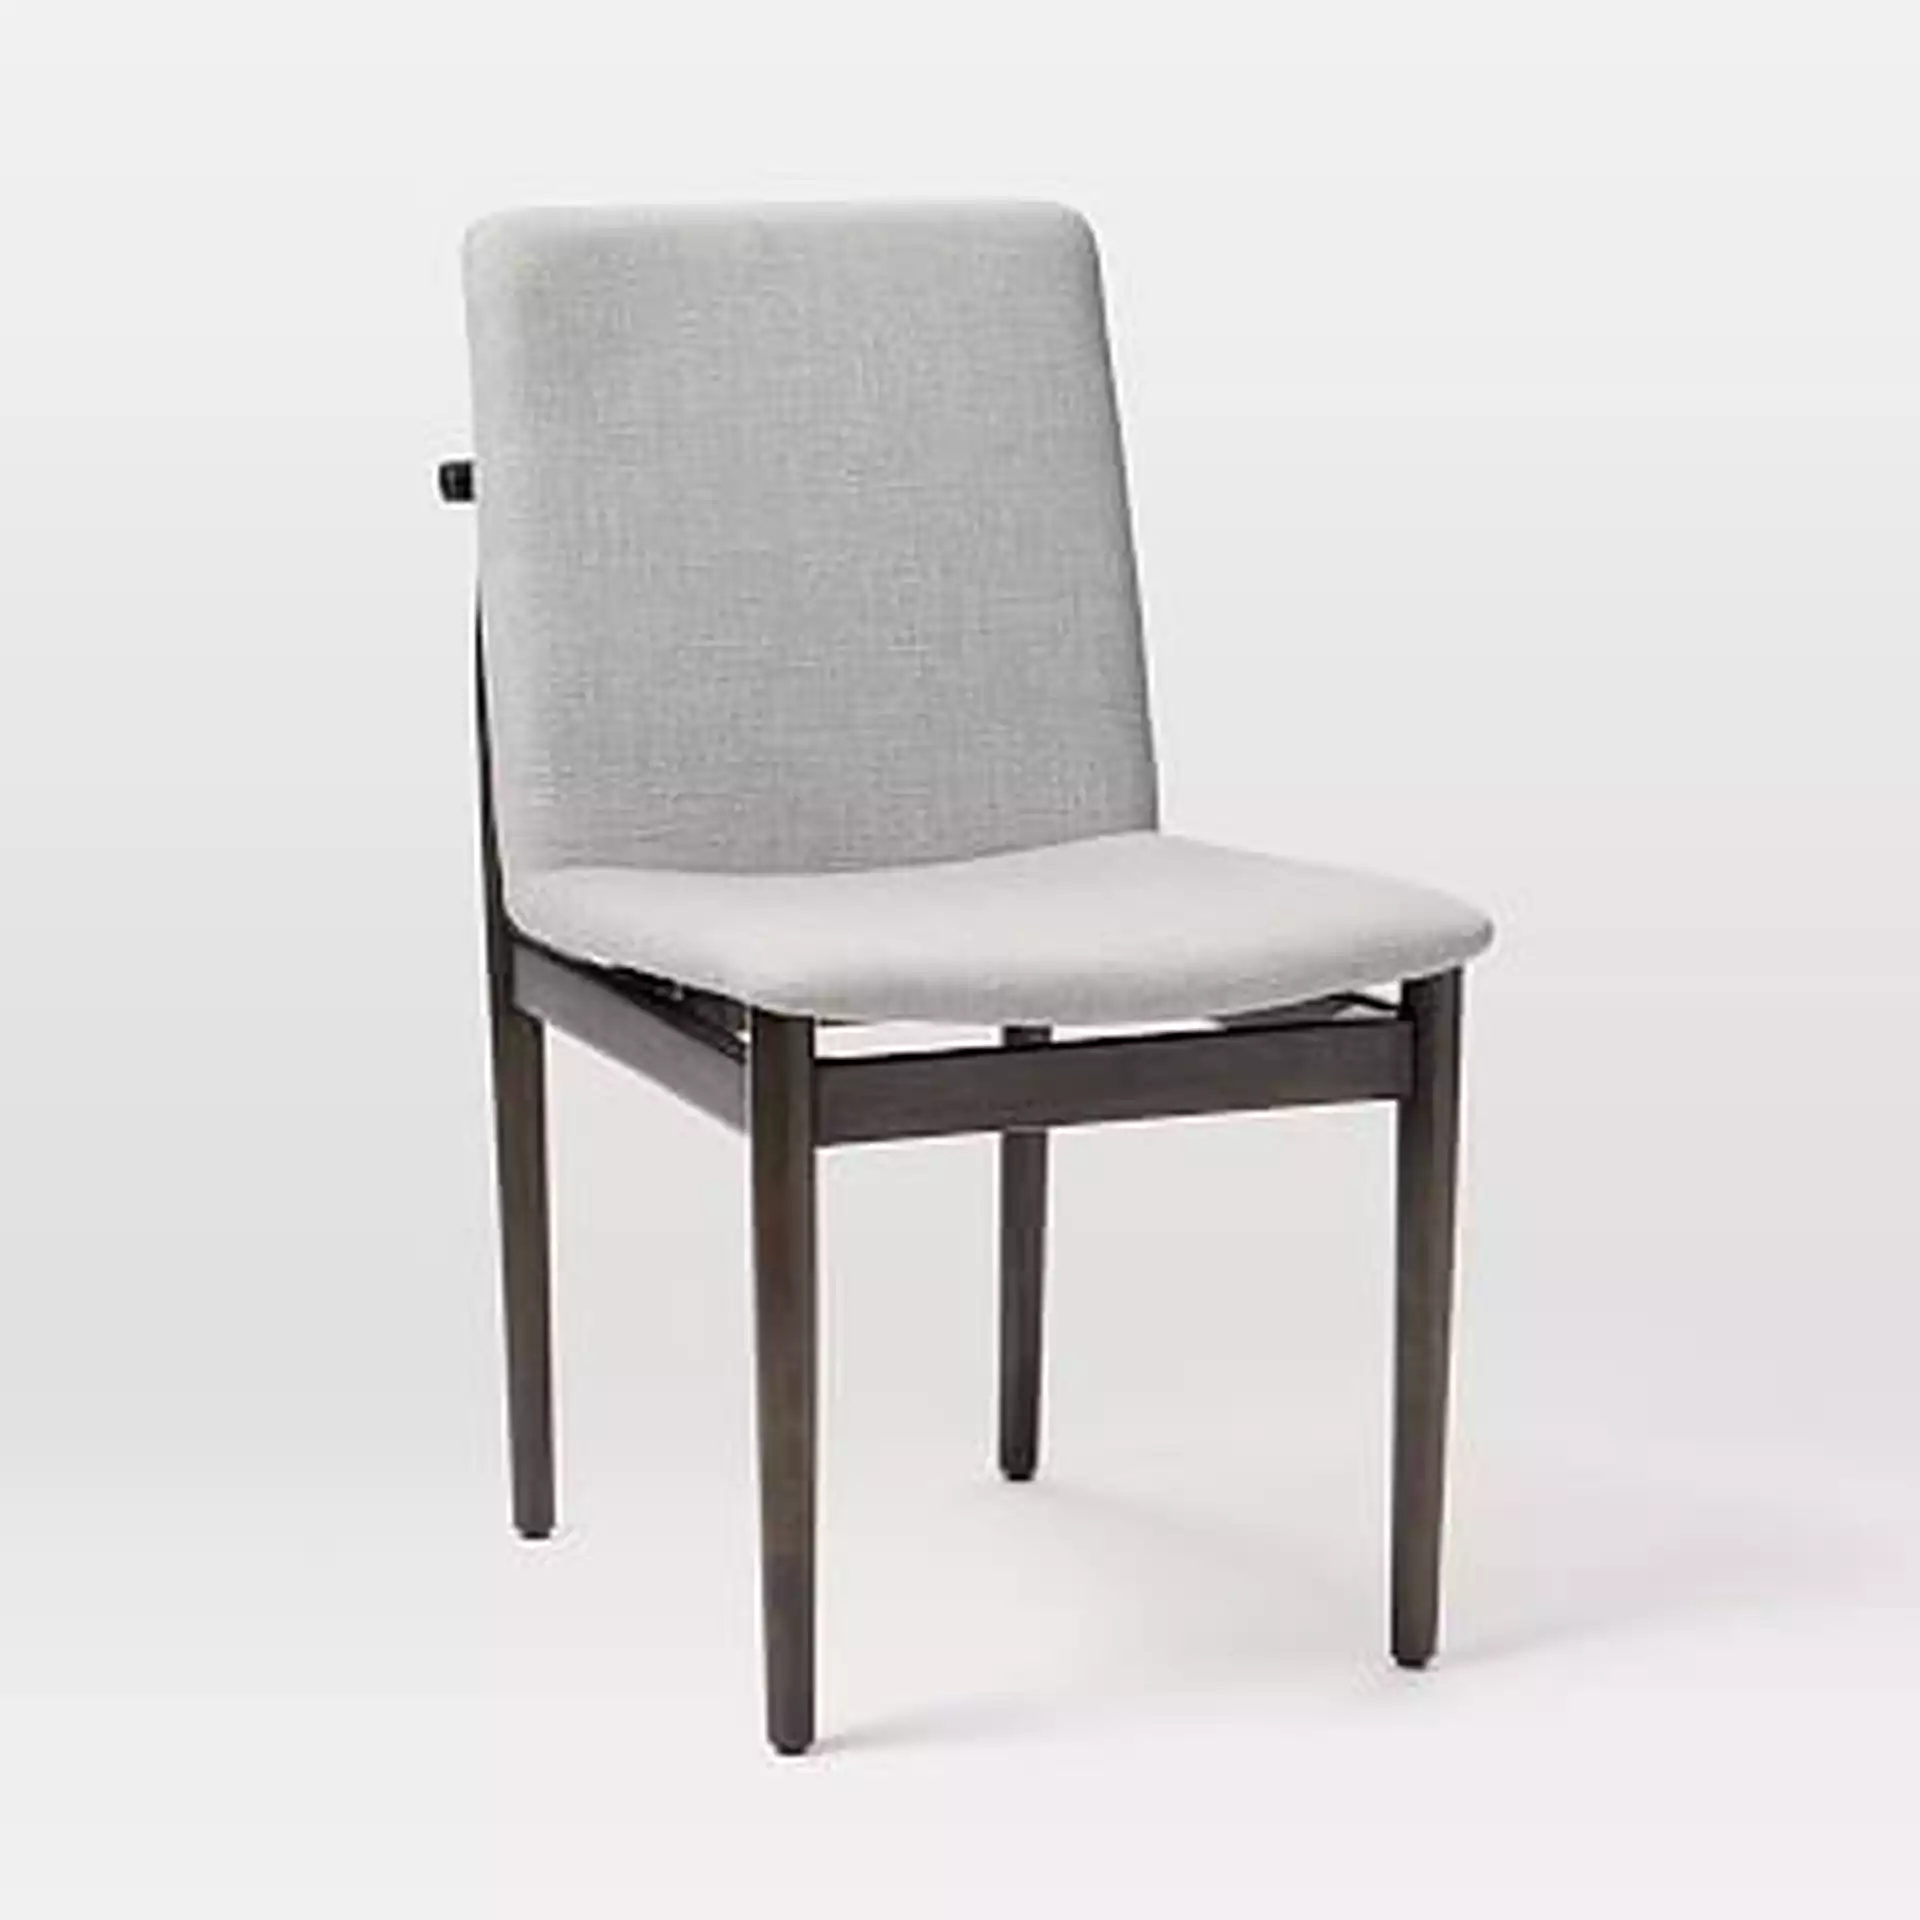 Framework Dining Chair,Performance Velvet,Silver,Walnut